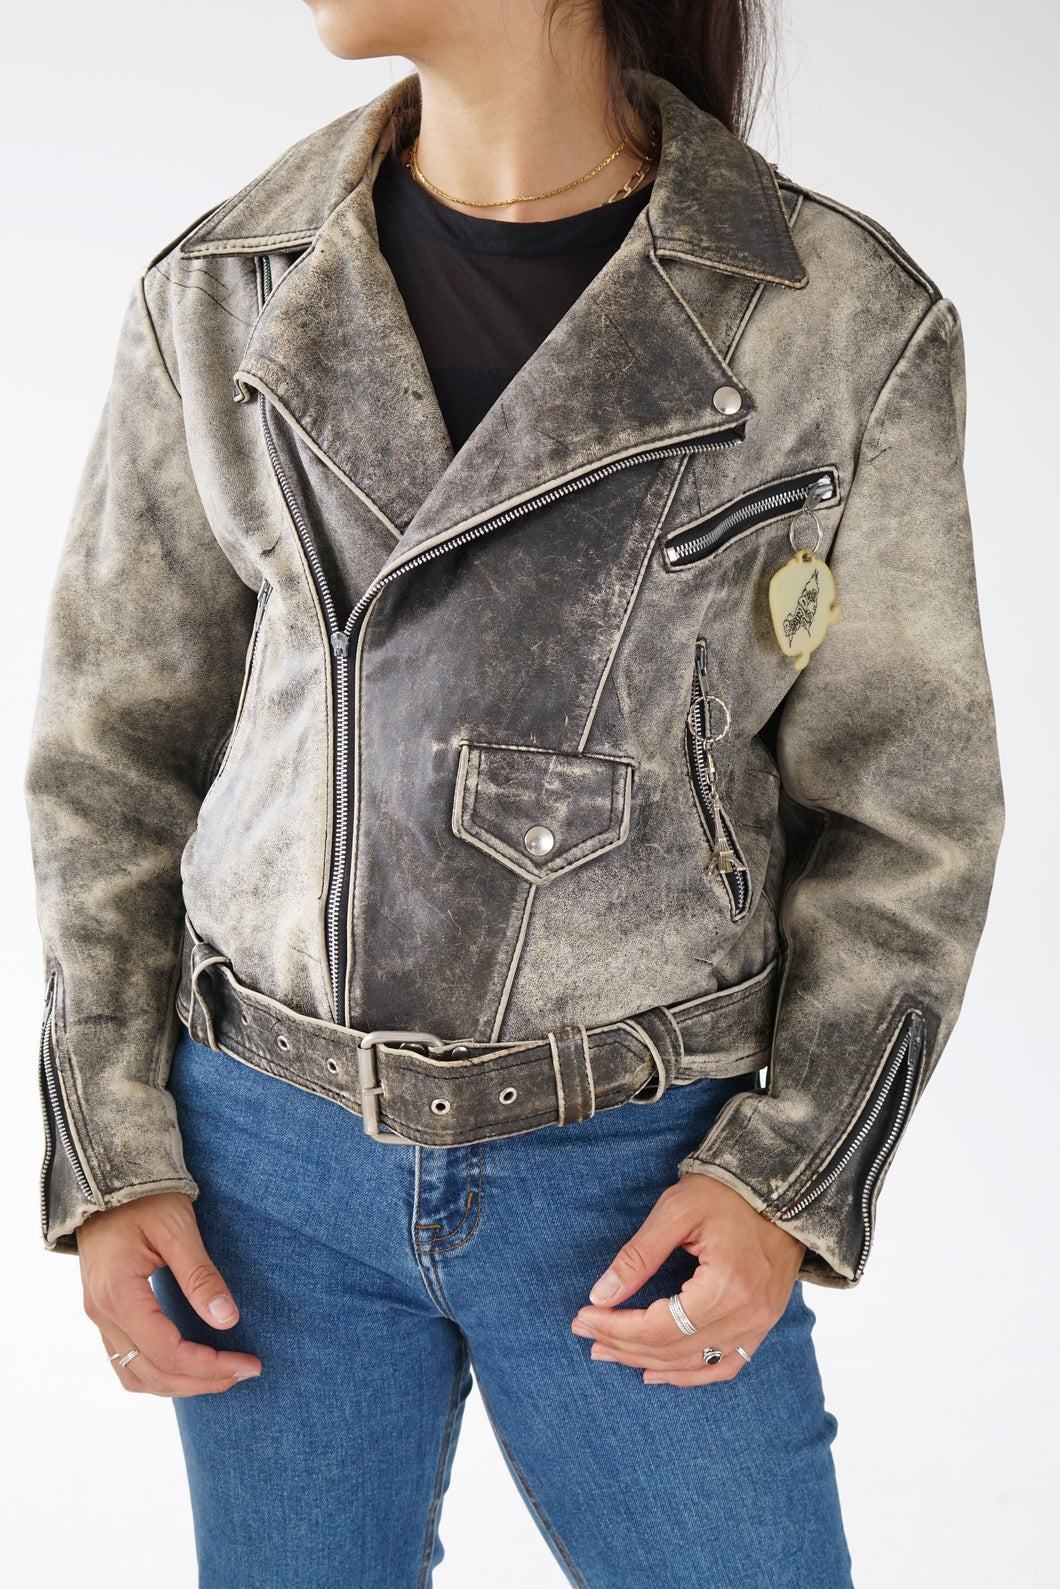 Leather jack en cuir vintage Due West unisex taille M